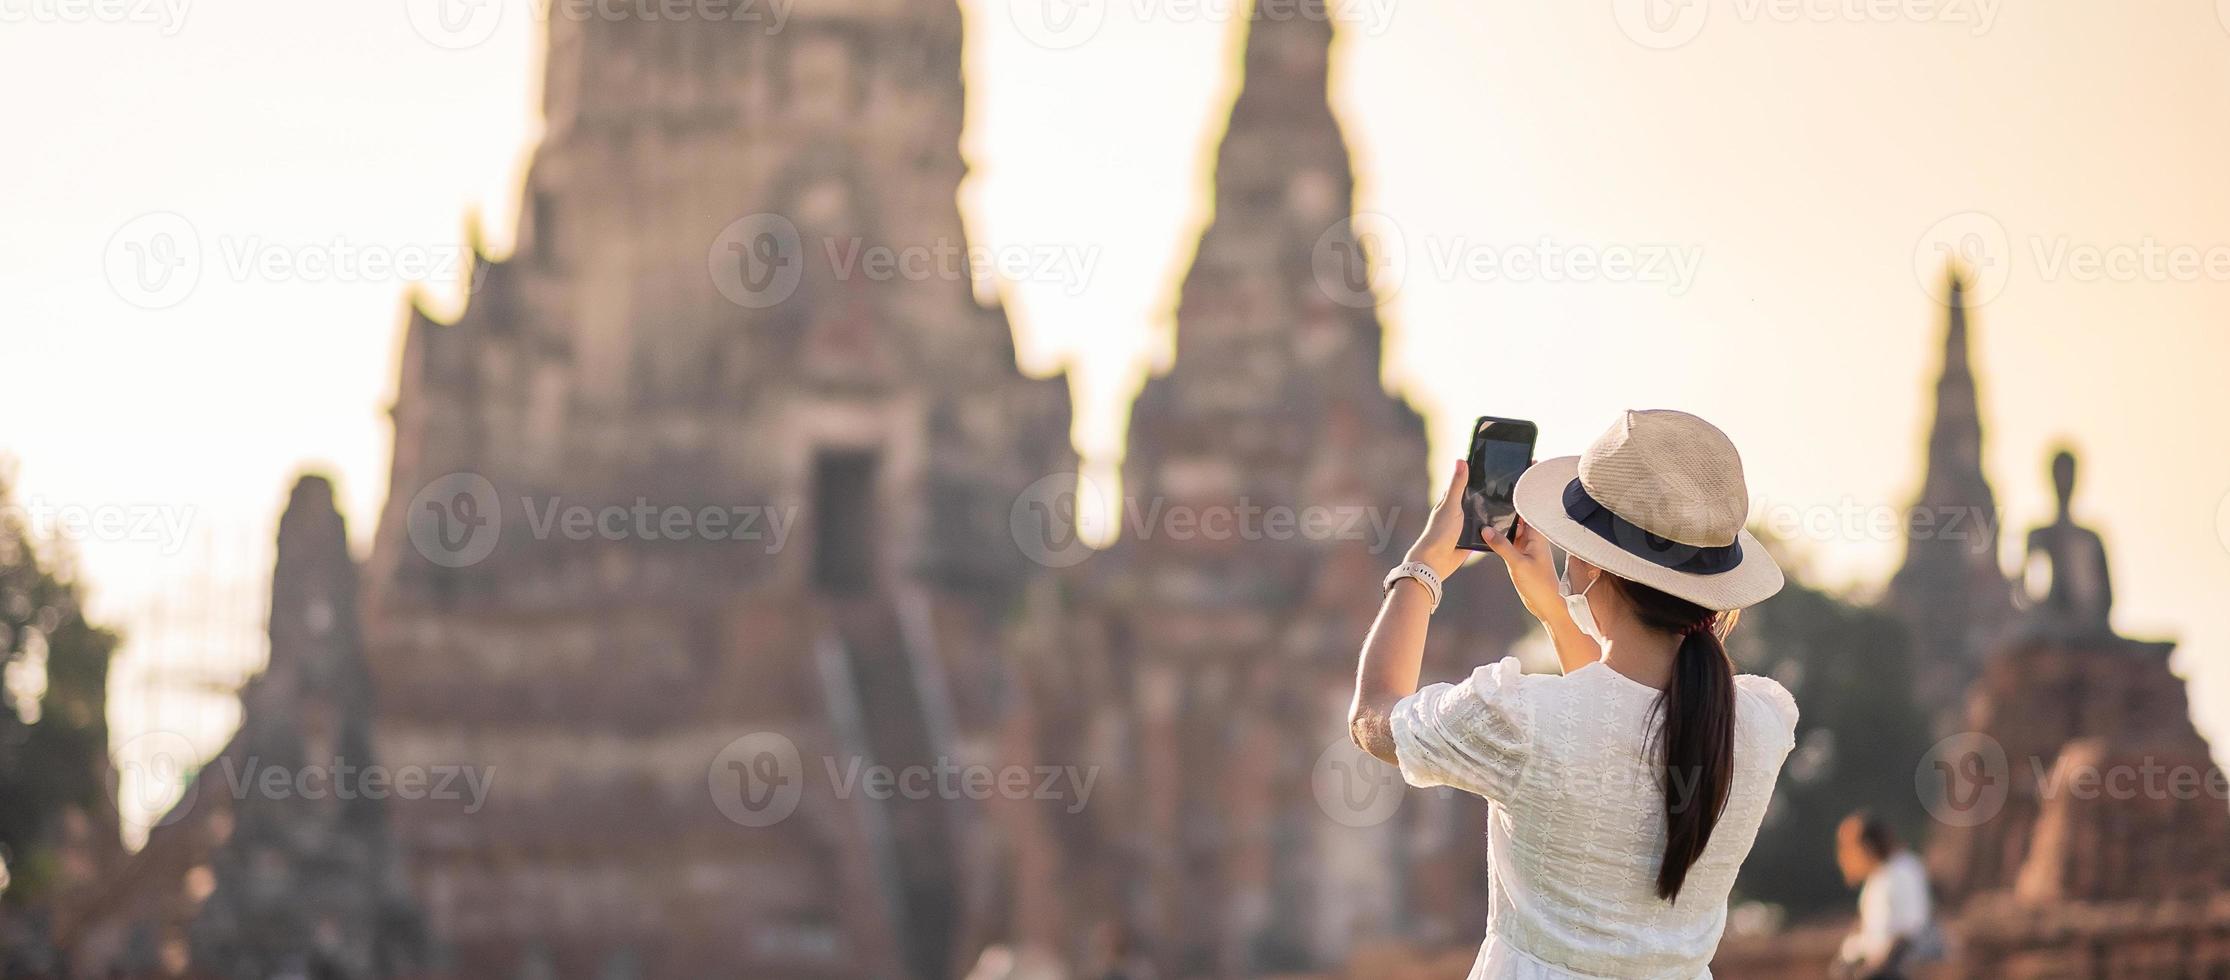 glad turistkvinna som bär kirurgisk ansiktsmask och tar foto med mobil smartphone, skyddar covid-19-pandemin under besök i ayutthaya-templet. nytt normal-, säkerhets- och resekoncept